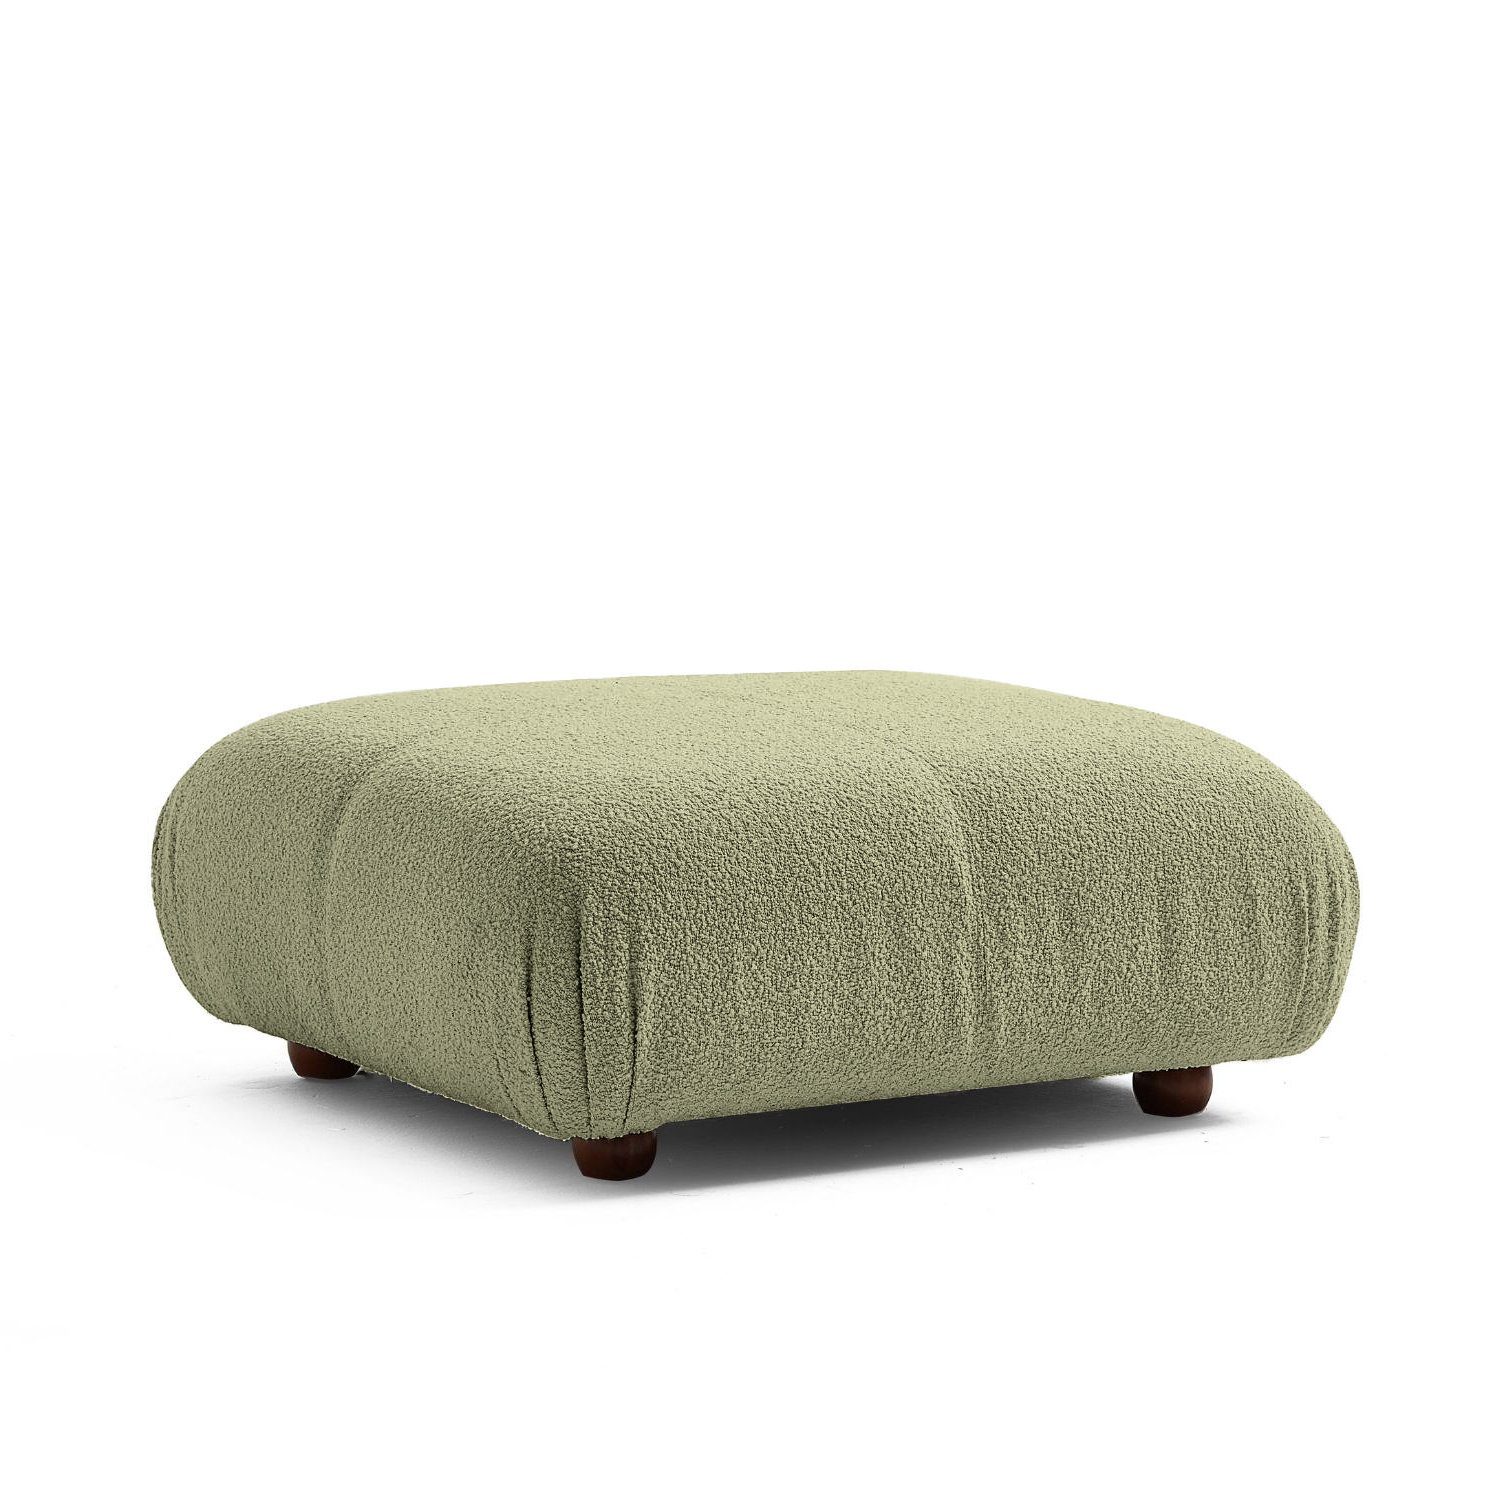 Knuffiges neueste enthalten! Dunkelgrün-Lieferung im aus Touch Aufbau me Komfortschaum Preis Sitzmöbel Generation Sofa und